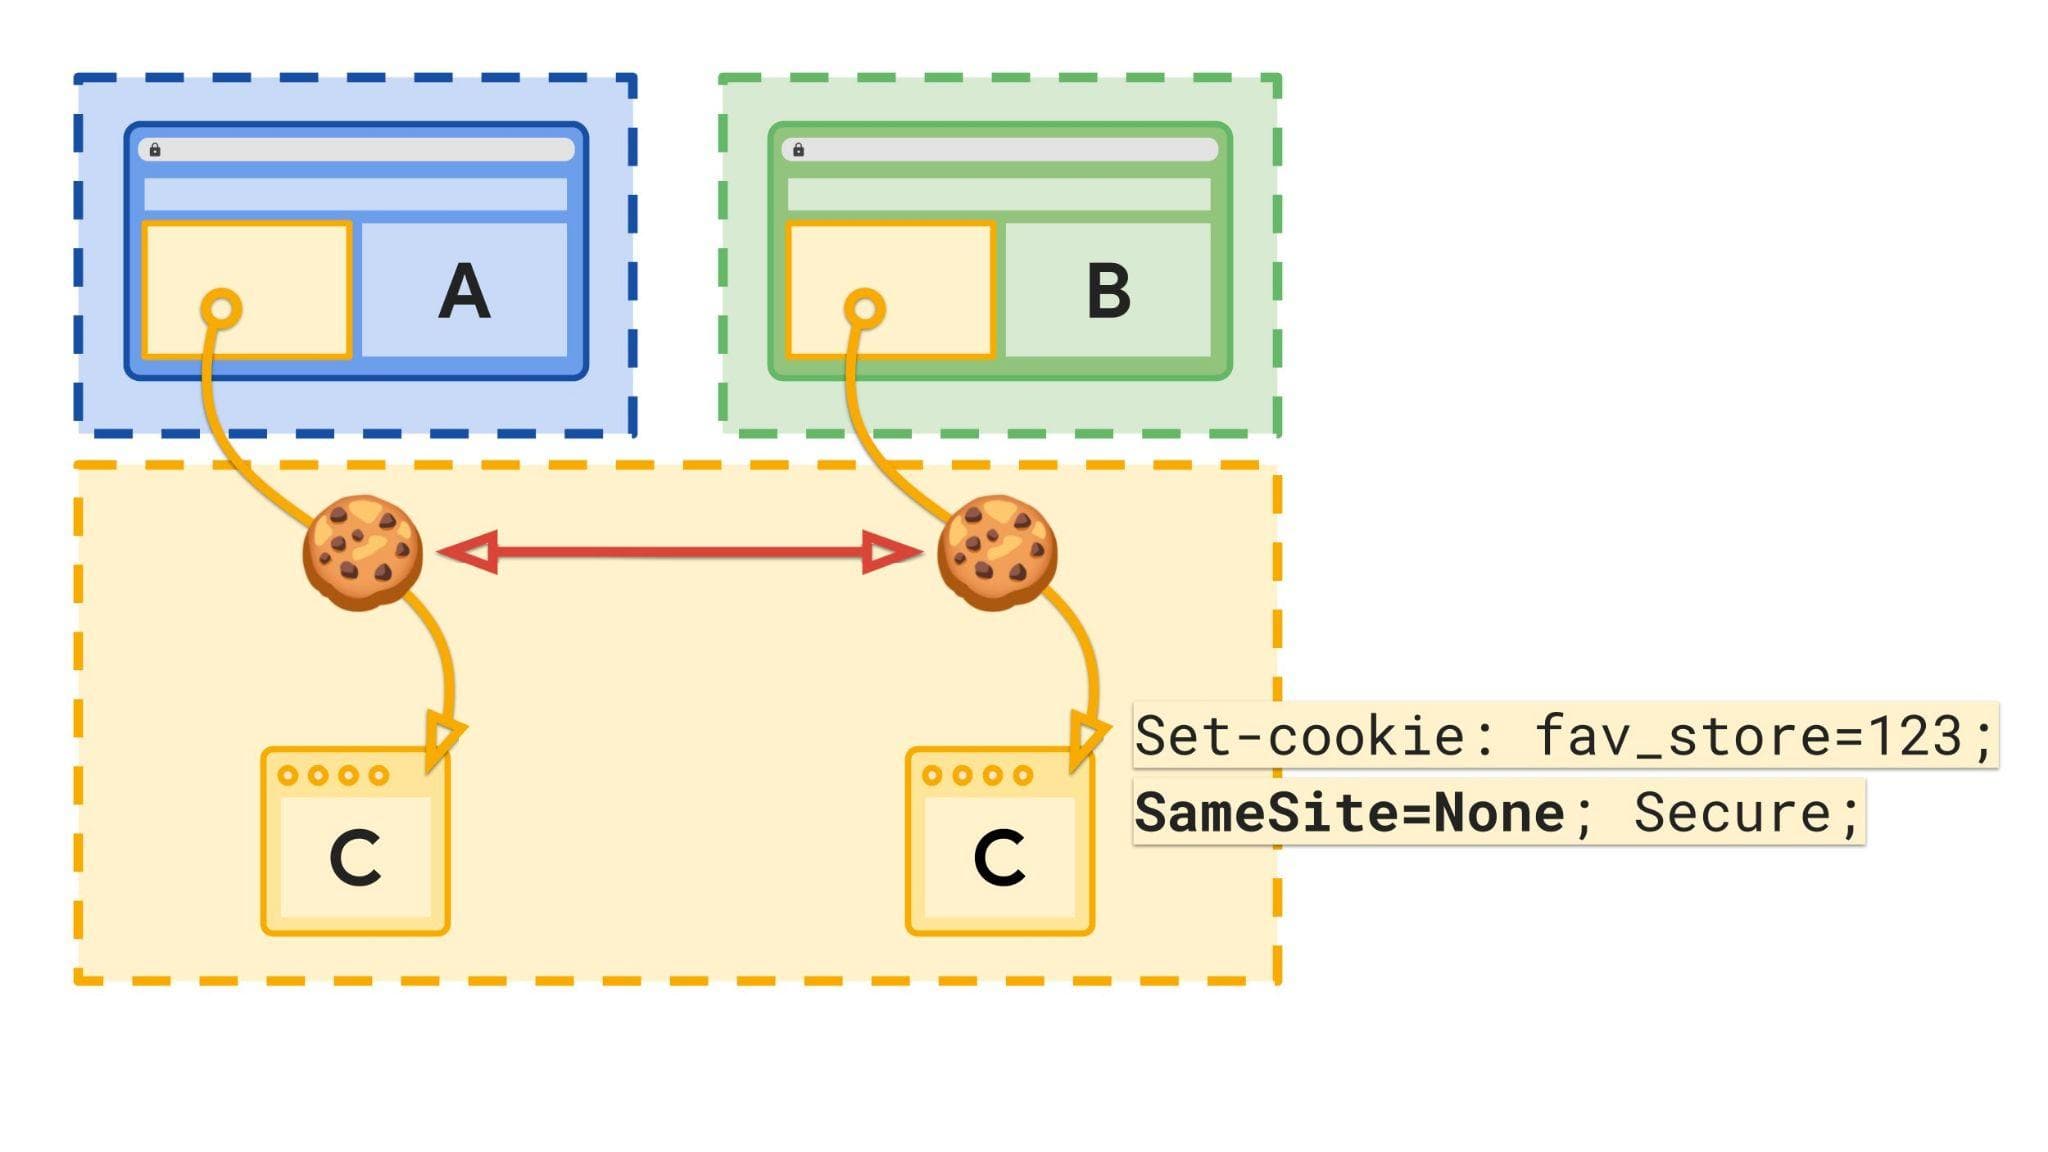 رسم بياني يعرض المواقع الإلكترونية ومساحة التخزين باستخدام ملفات تعريف ارتباط غير مقسَّمة